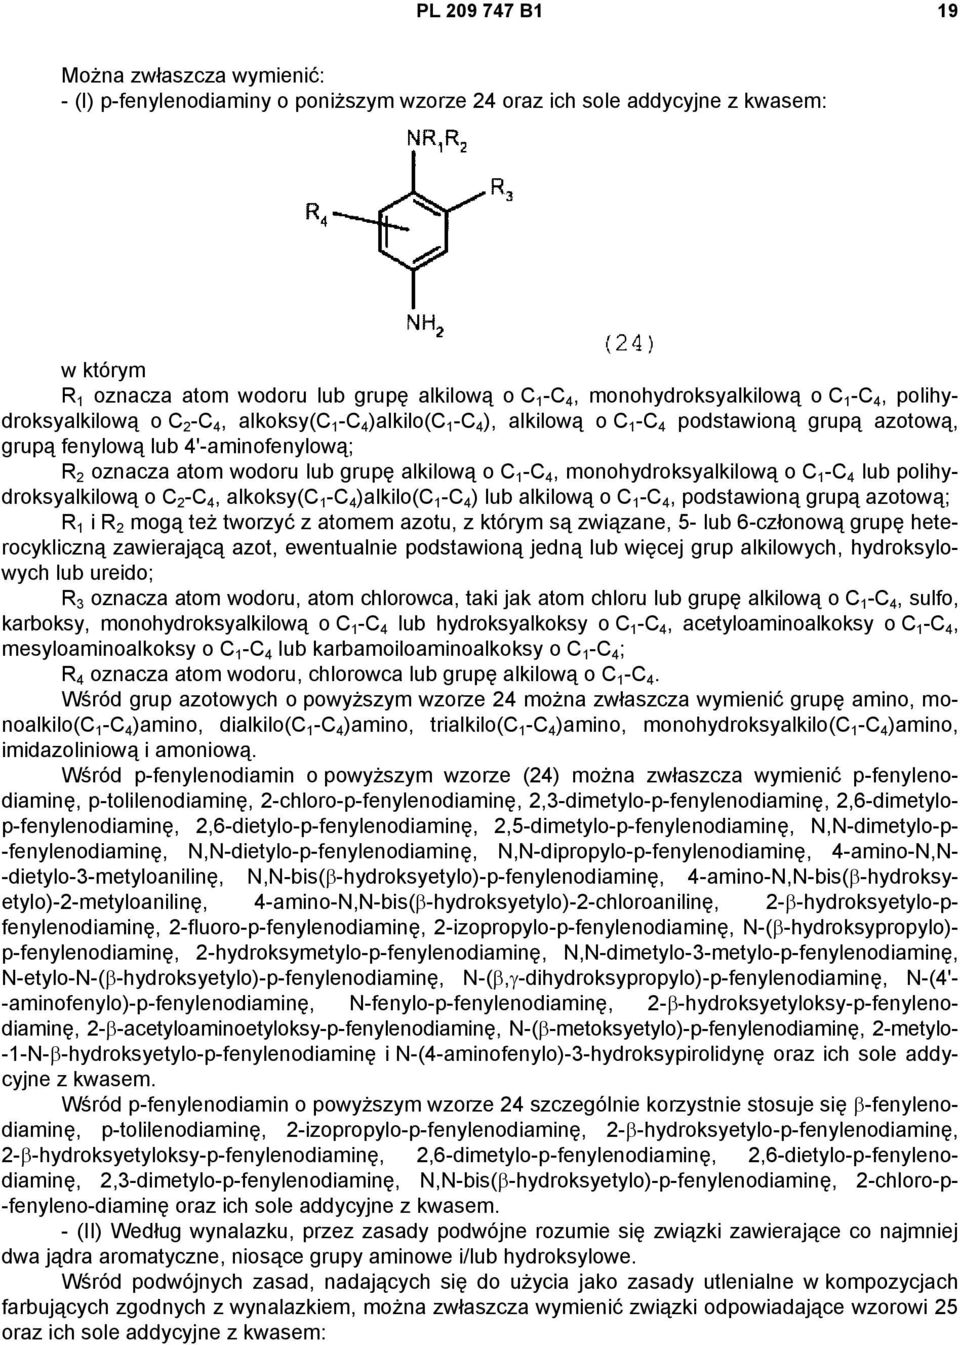 atom wodoru lub grupę alkilową o C 1 -C 4, monohydroksyalkilową o C 1 -C 4 lub polihydroksyalkilową o C 2 -C 4, alkoksy(c 1 -C 4 )alkilo(c 1 -C 4 ) lub alkilową o C 1 -C 4, podstawioną grupą azotową;